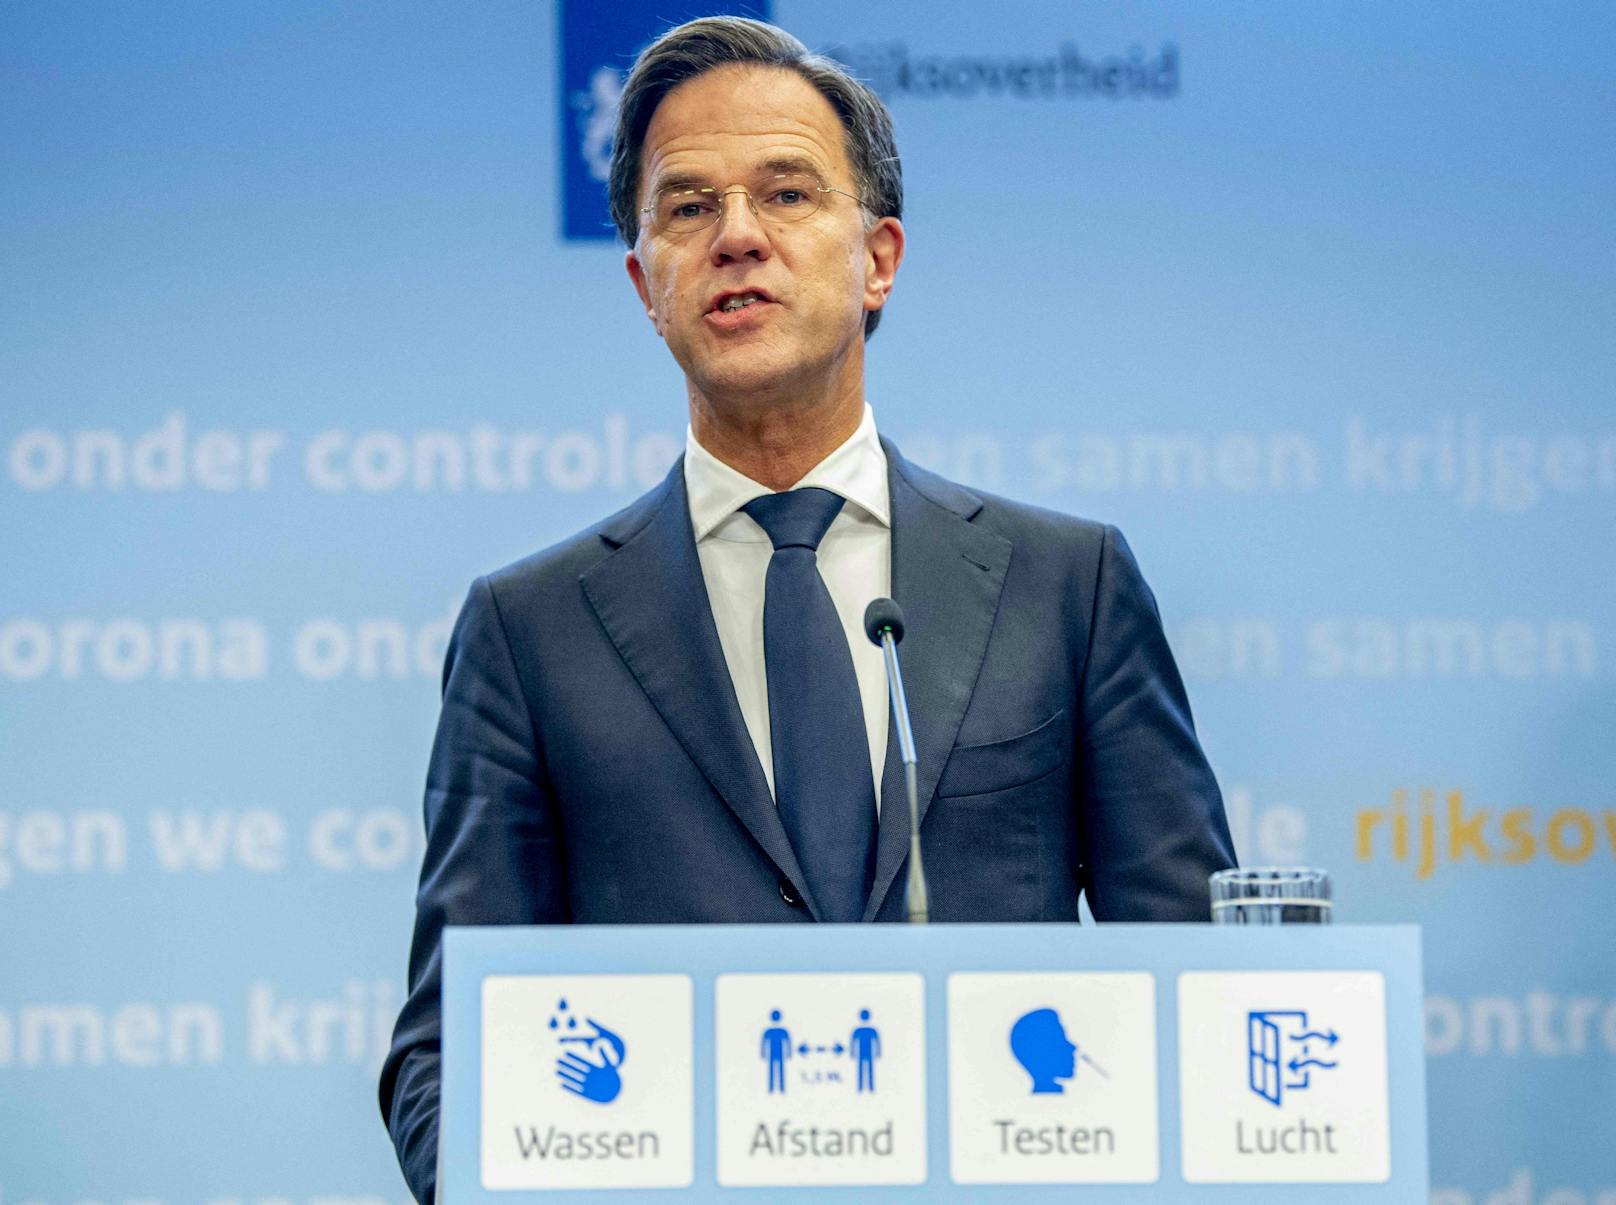 Nach über einen Monat Lockdown soll in den Niederlanden wieder gelockert werden. Das soll Ministerpräsident Mark Rutte laut "Reuters" heute verkünden.